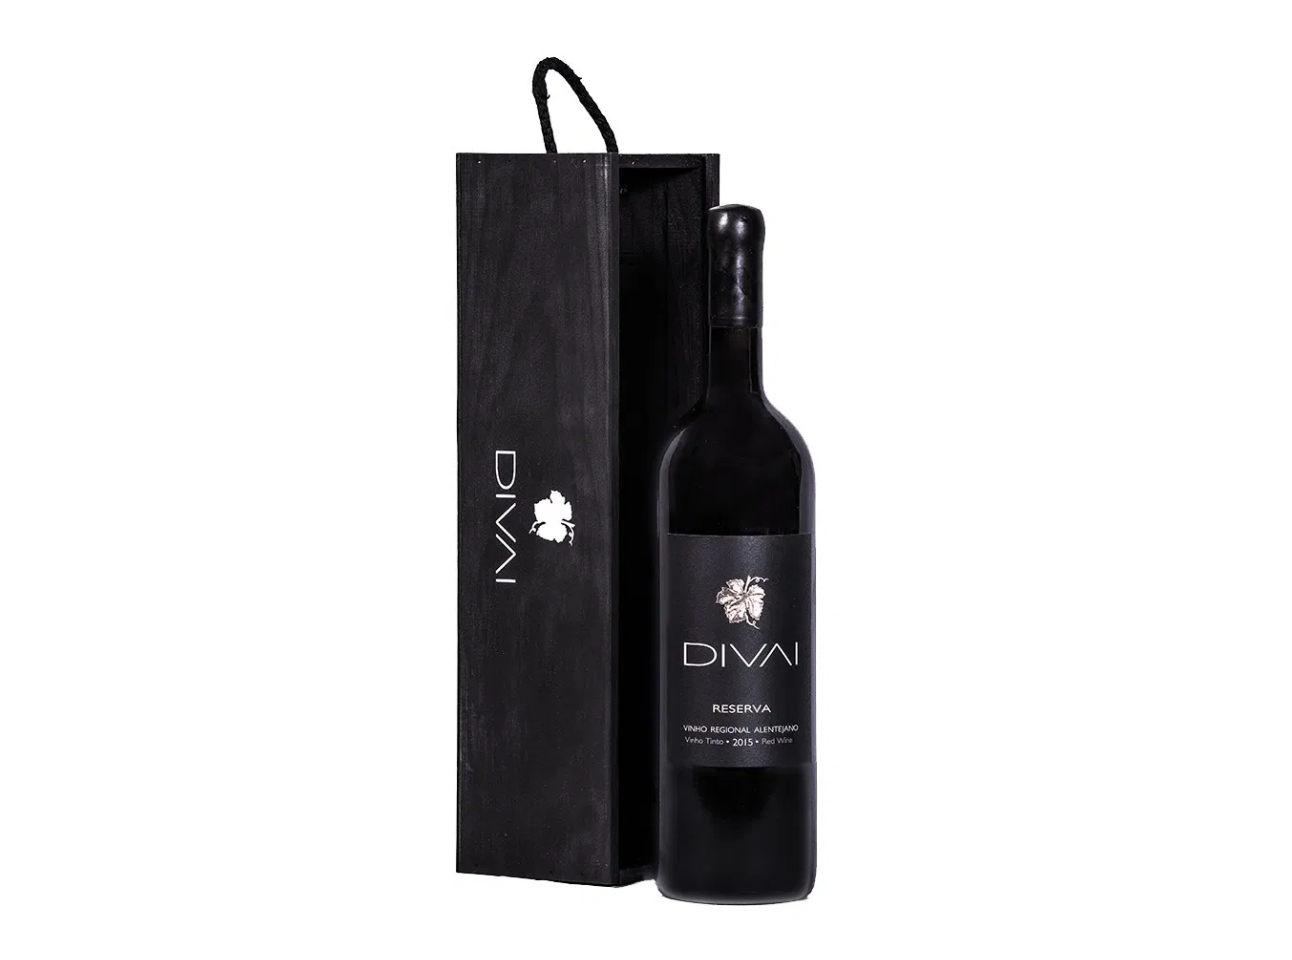 DIVAI Reserva Red wine 0.75l including premium giftbox